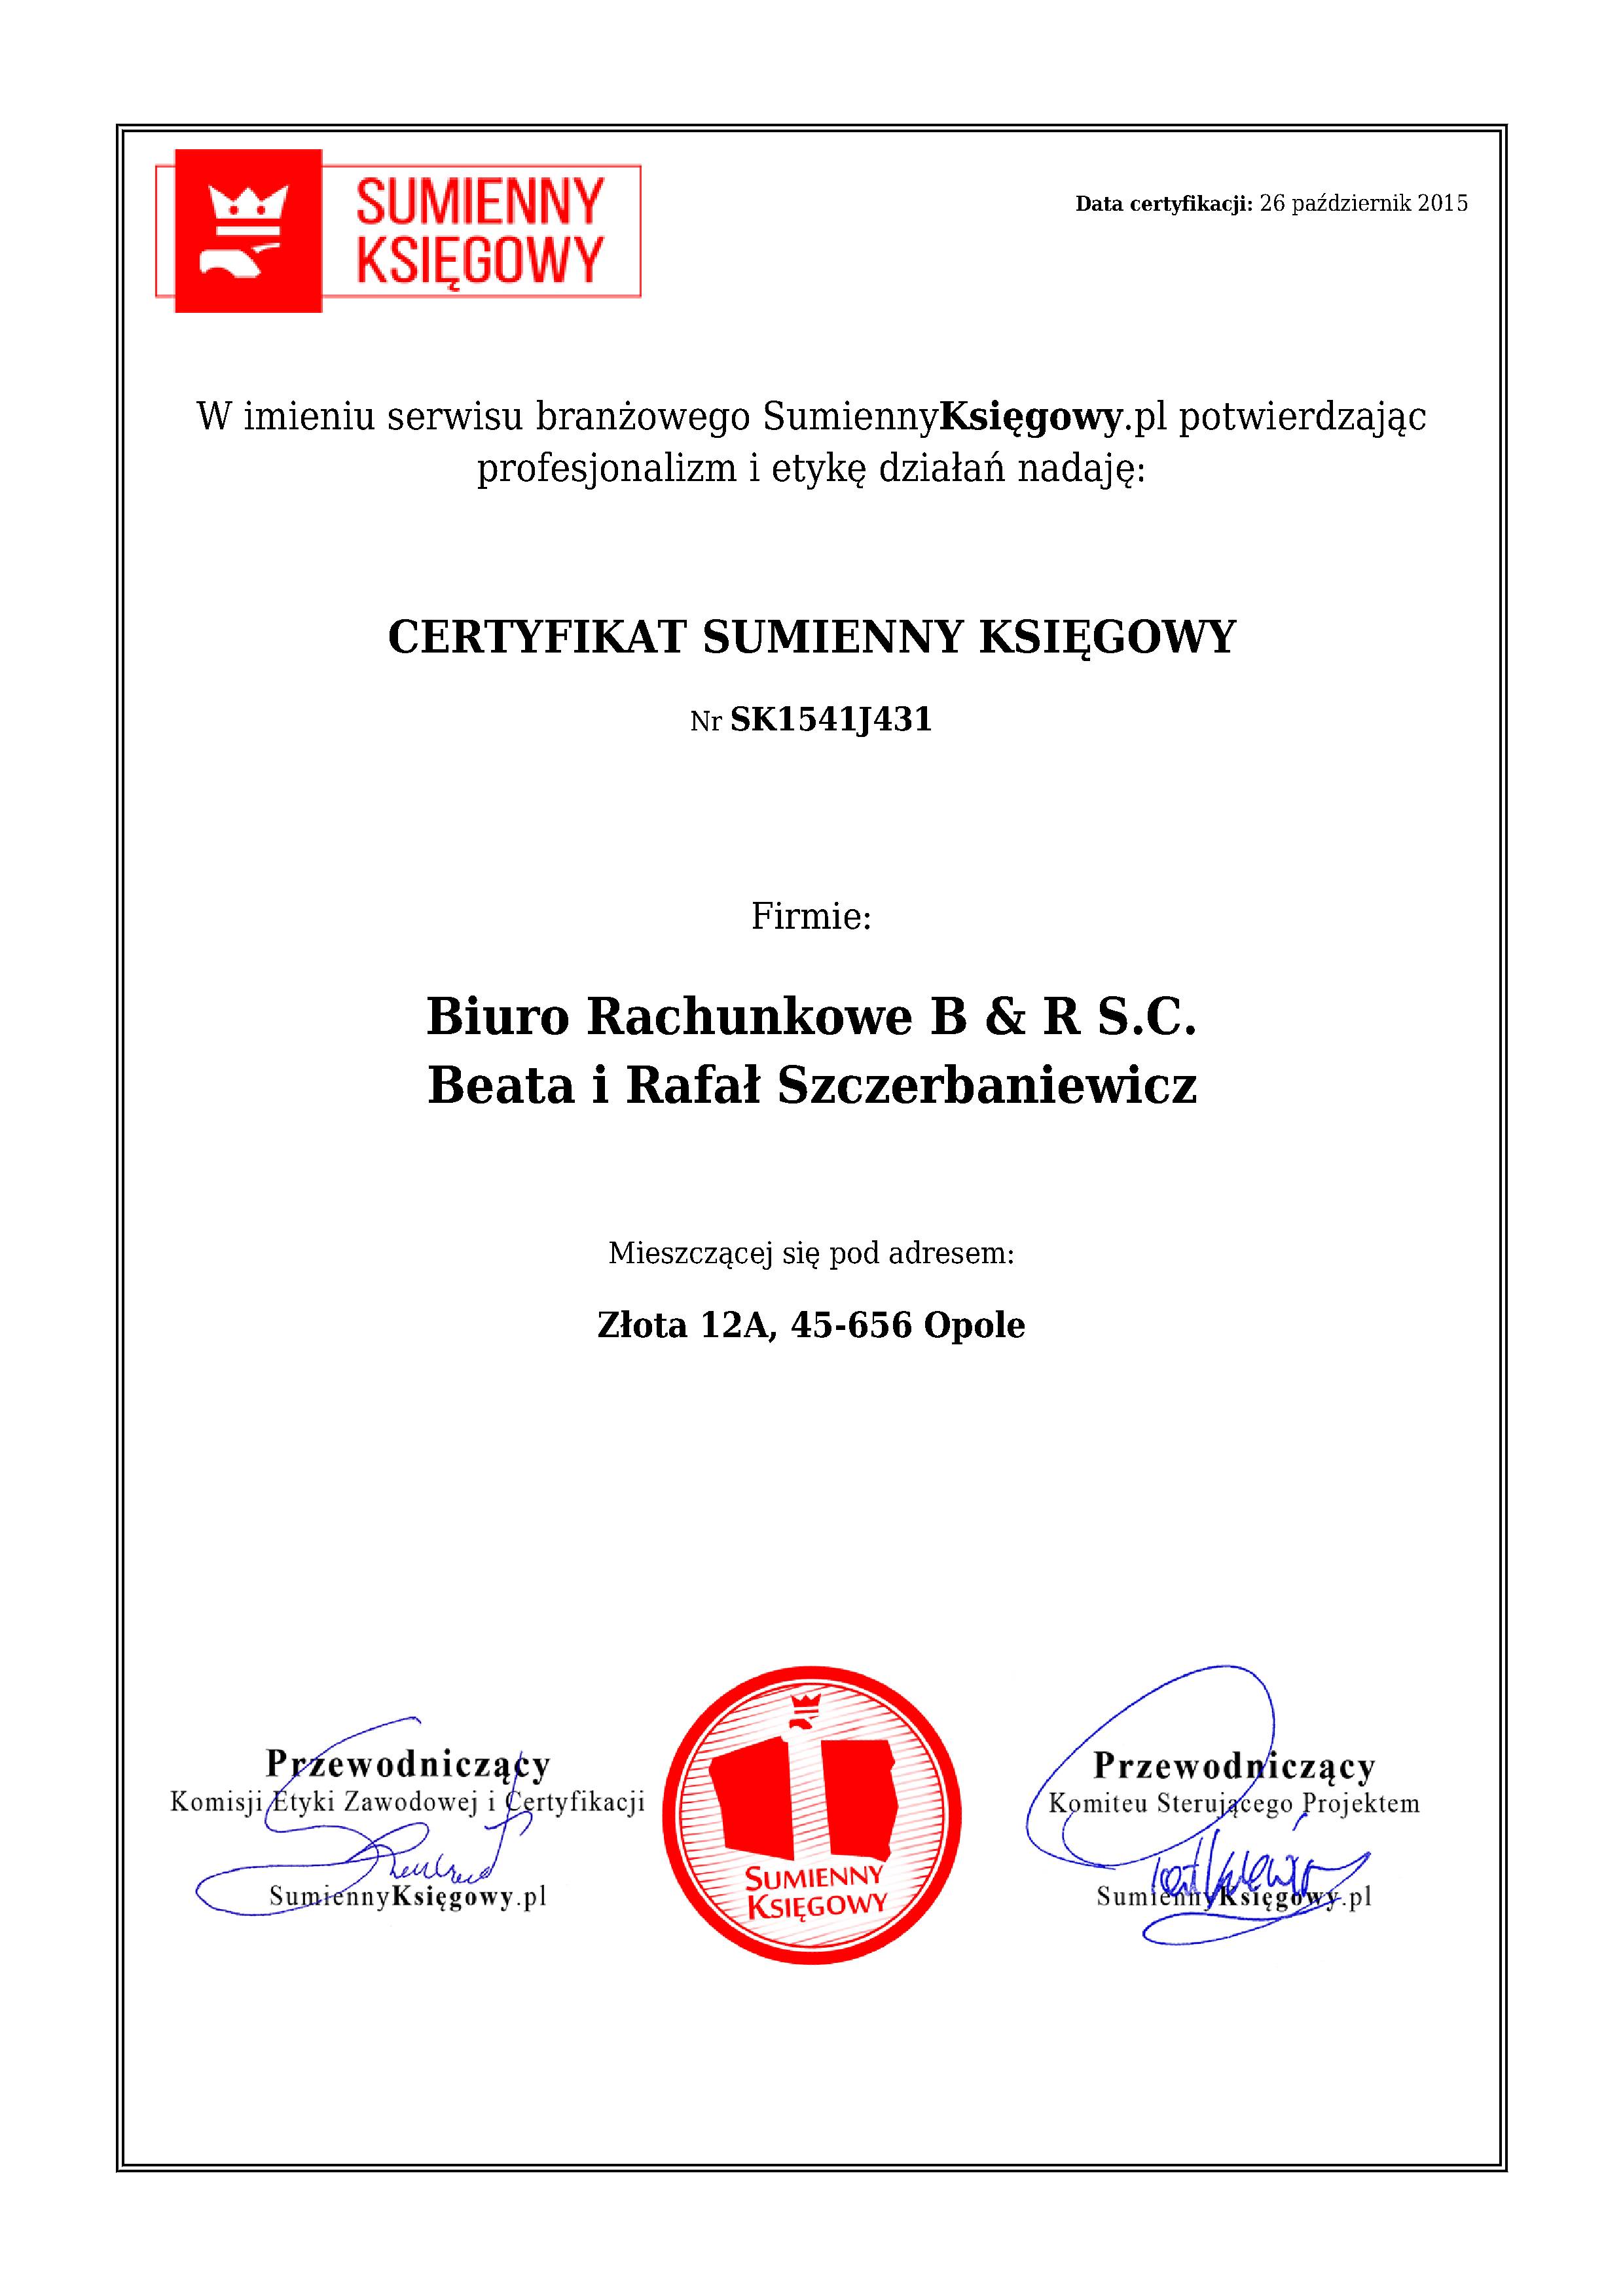 Certyfikat Biuro Rachunkowe B & R S.C. Beata i Rafał Szczerbaniewicz